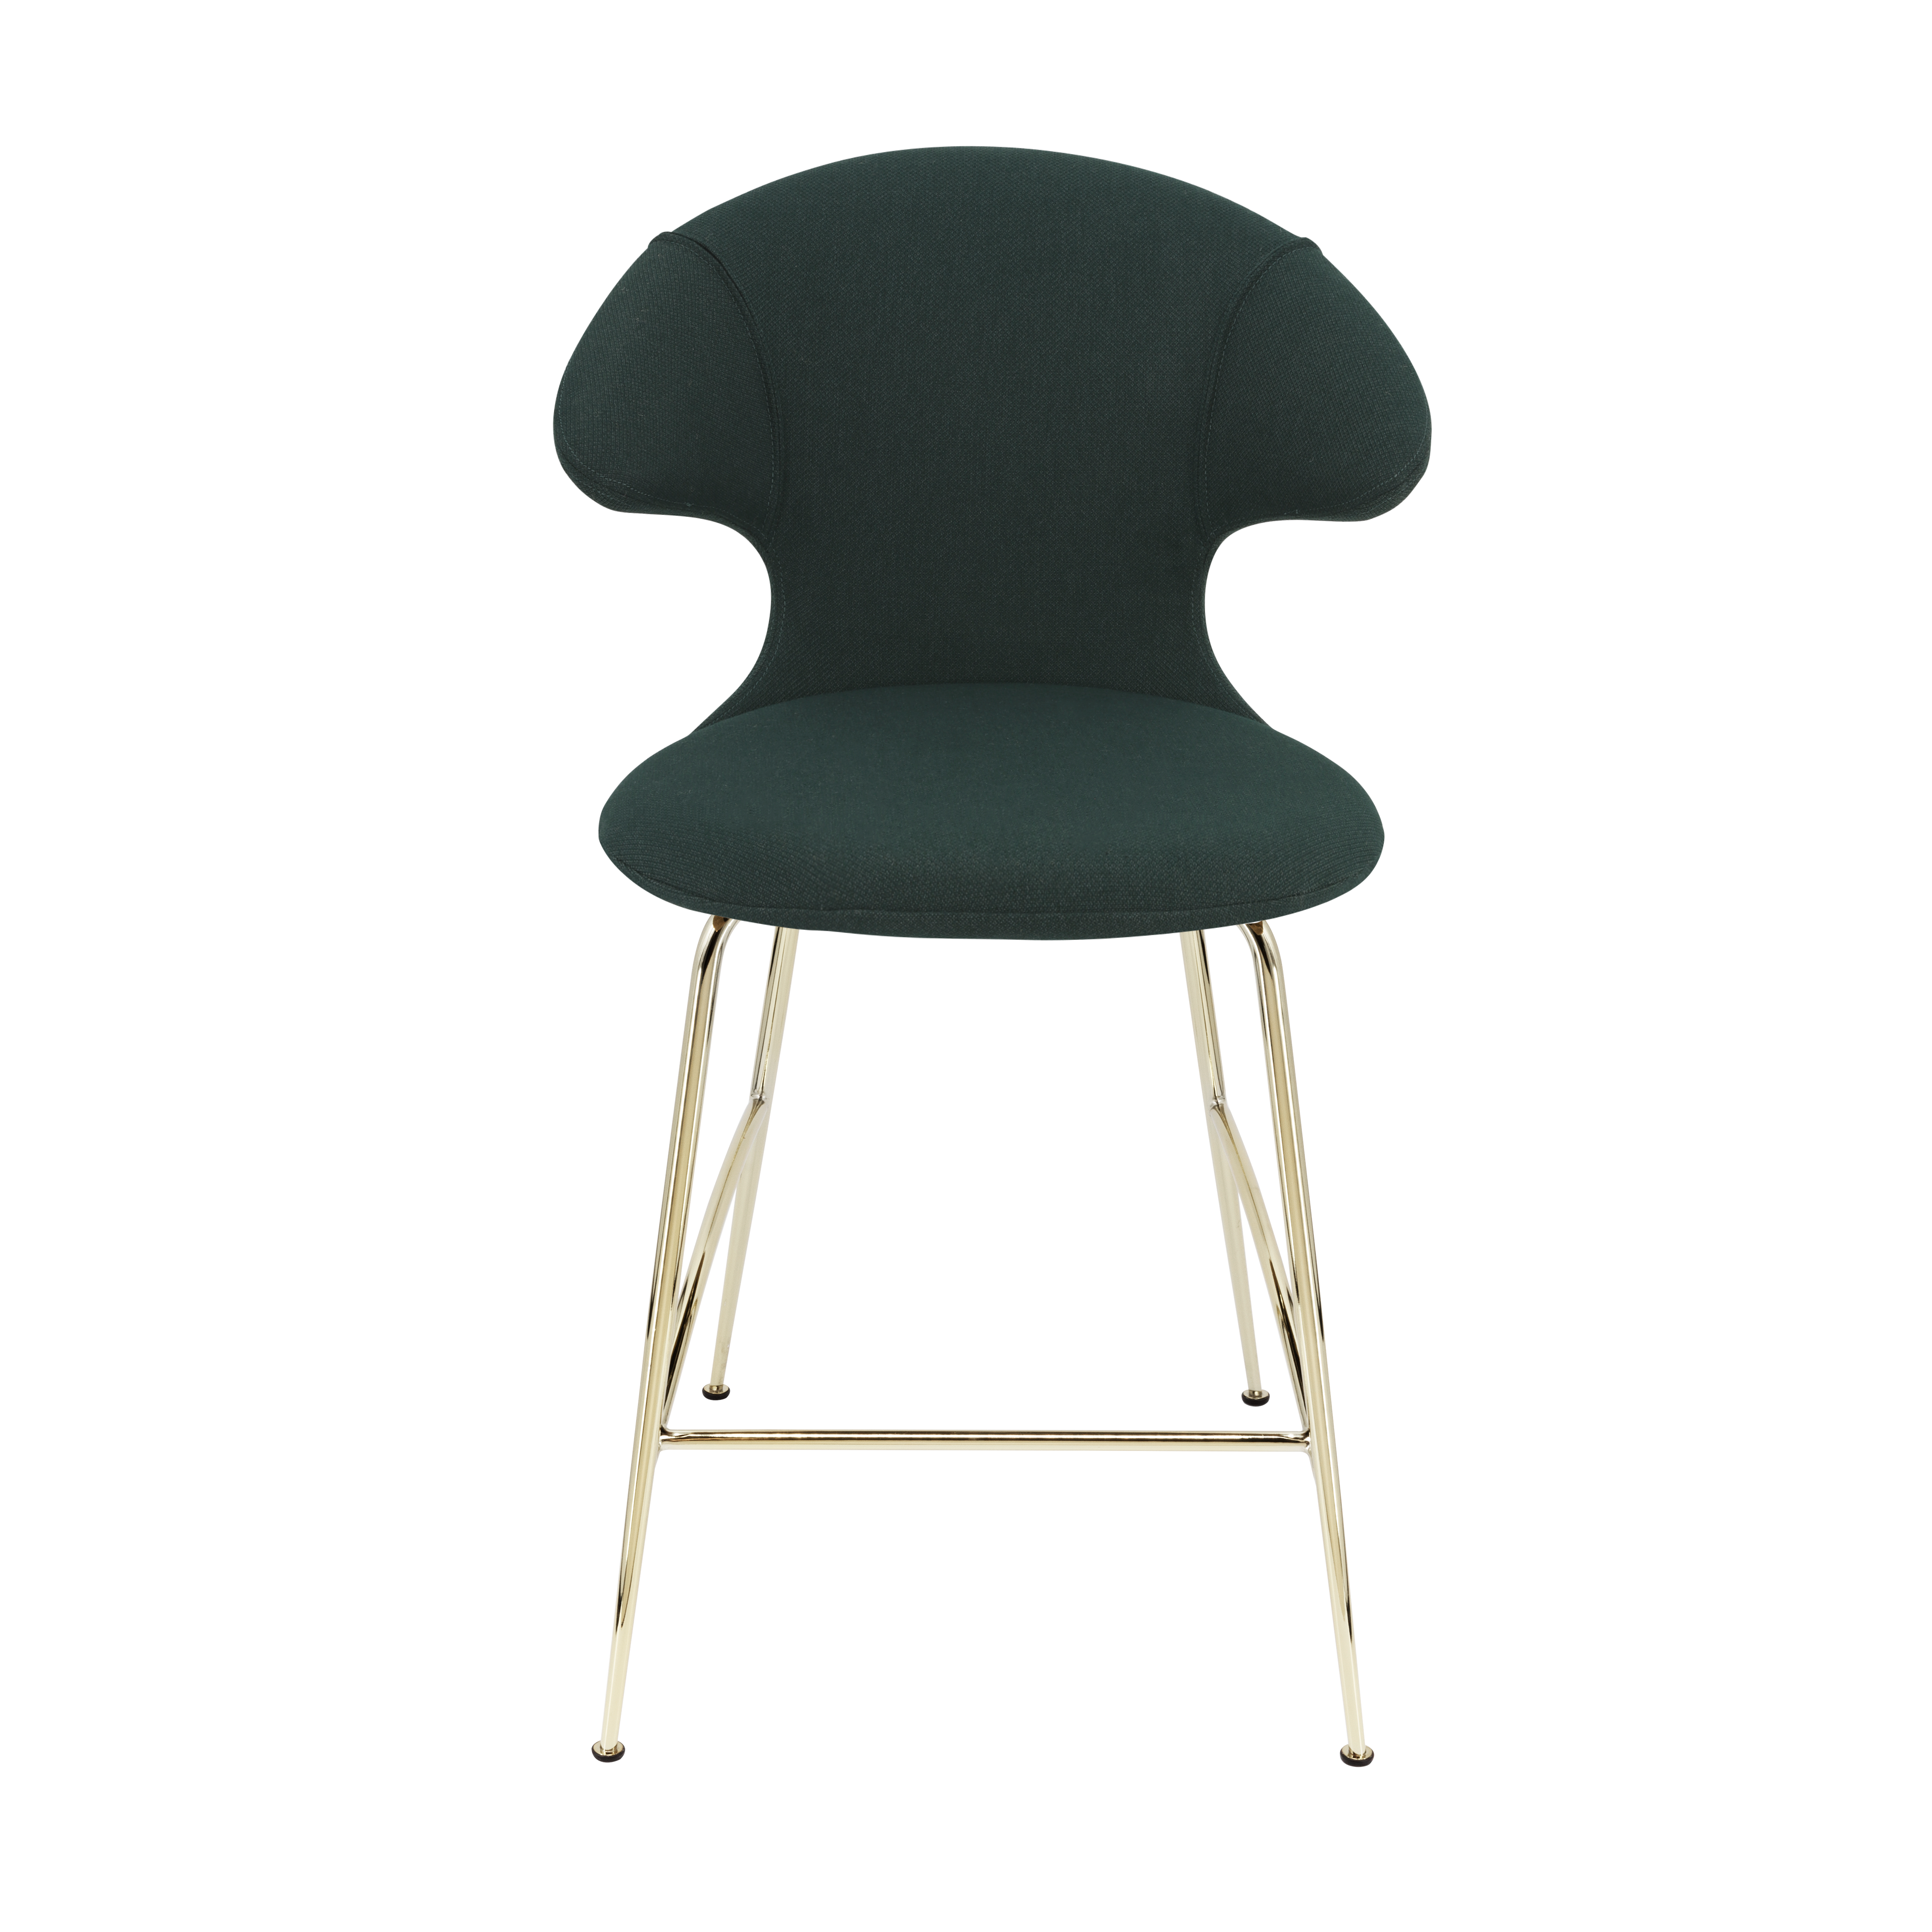 Time Flies Counter Stuhl in Calm Seas präsentiert im Onlineshop von KAQTU Design AG. Barstuhl mit Armlehne ist von Umage